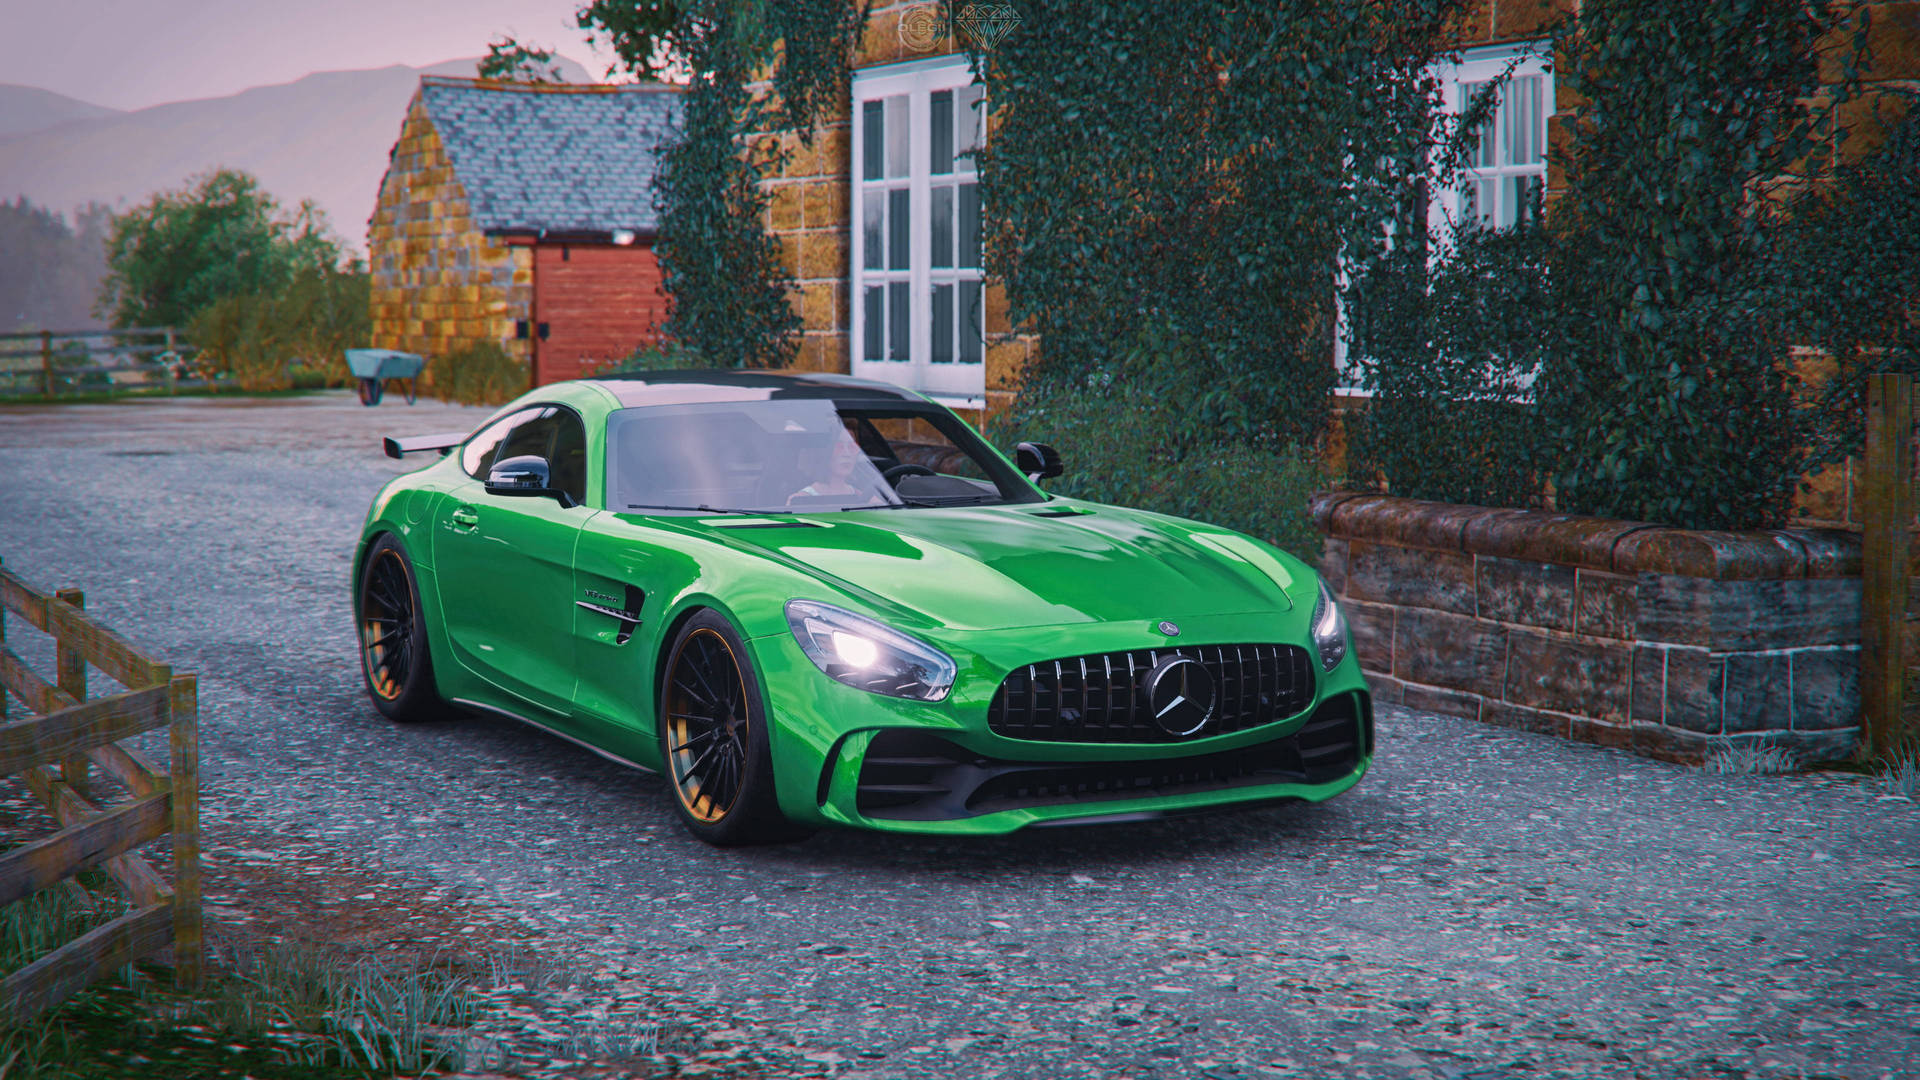 Gtr Green Monster From Forza 4